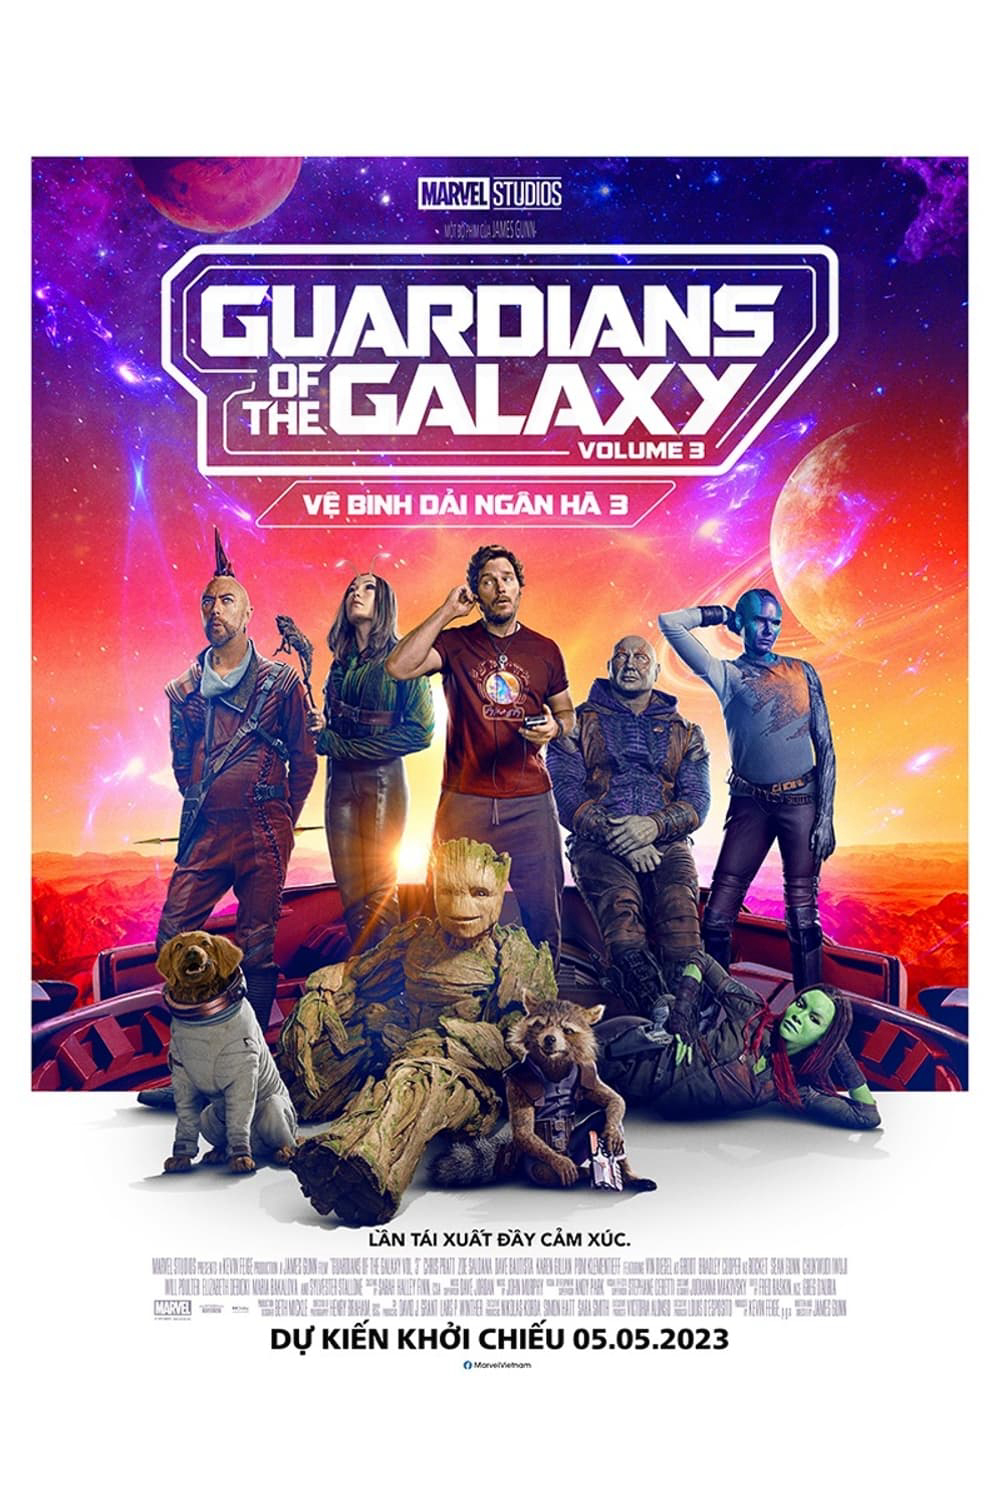 Xem Phim Vệ Binh Dải Ngân Hà 3 (Guardians of the Galaxy Volume 3)